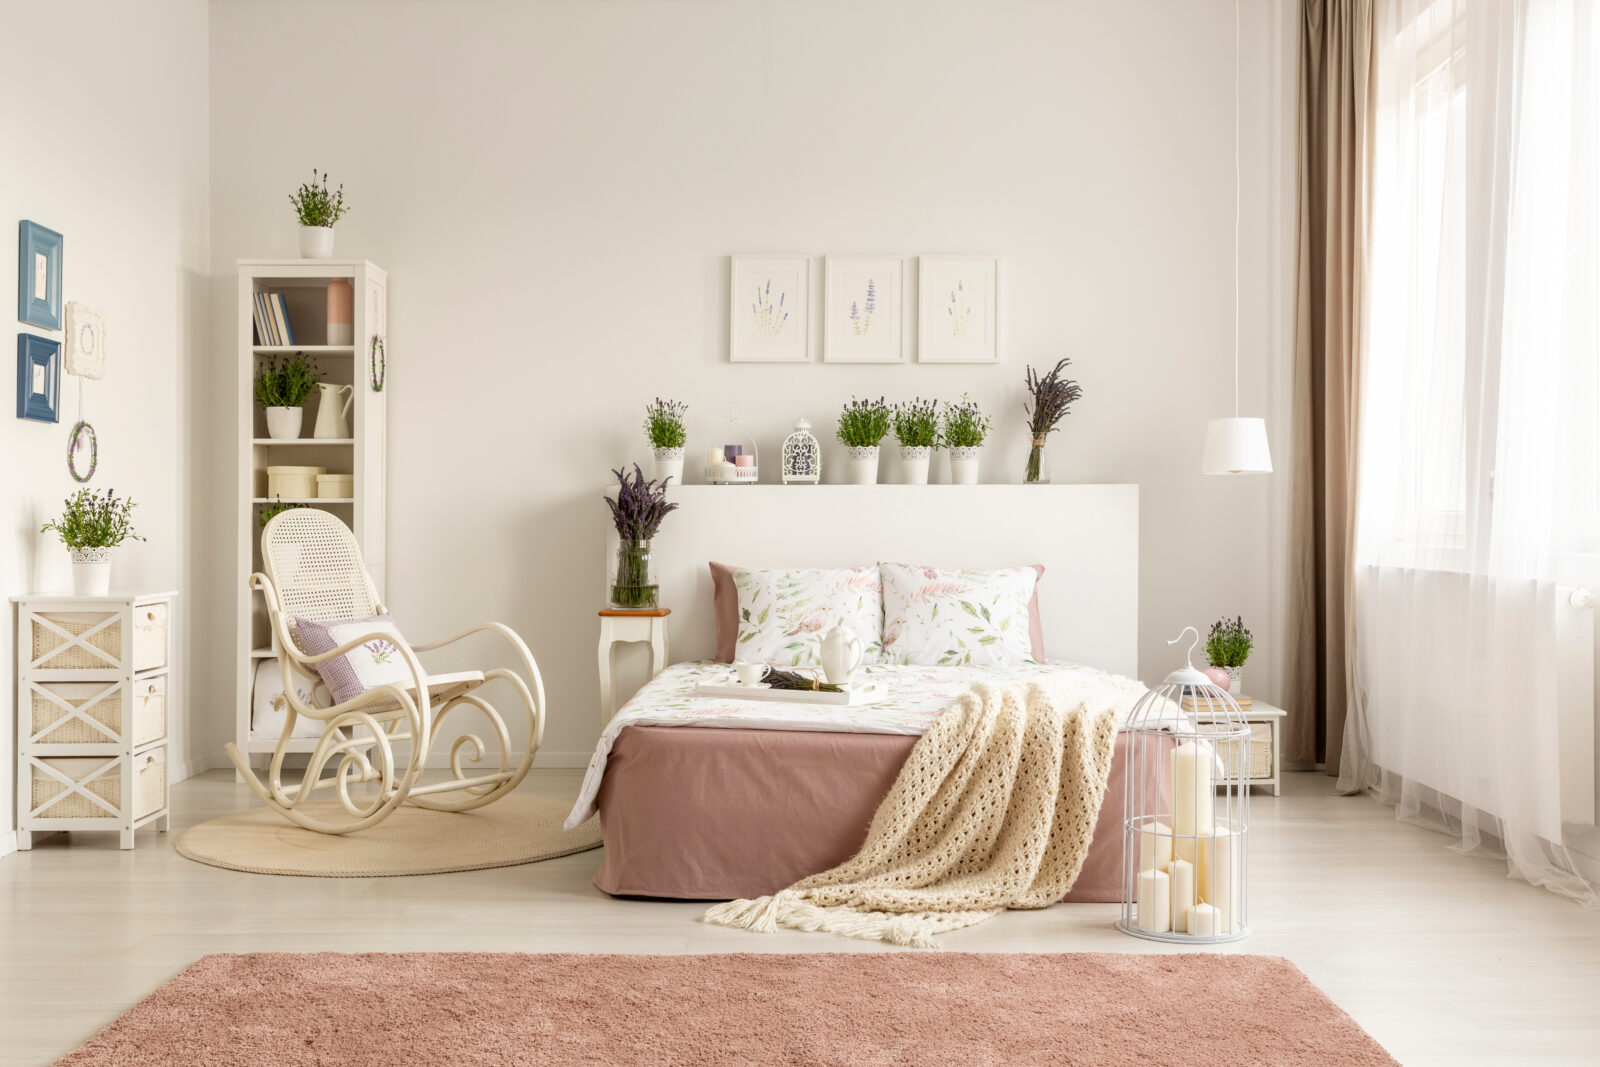 półka, fotel bujany, łóżko z rożową narzutą, obrazy